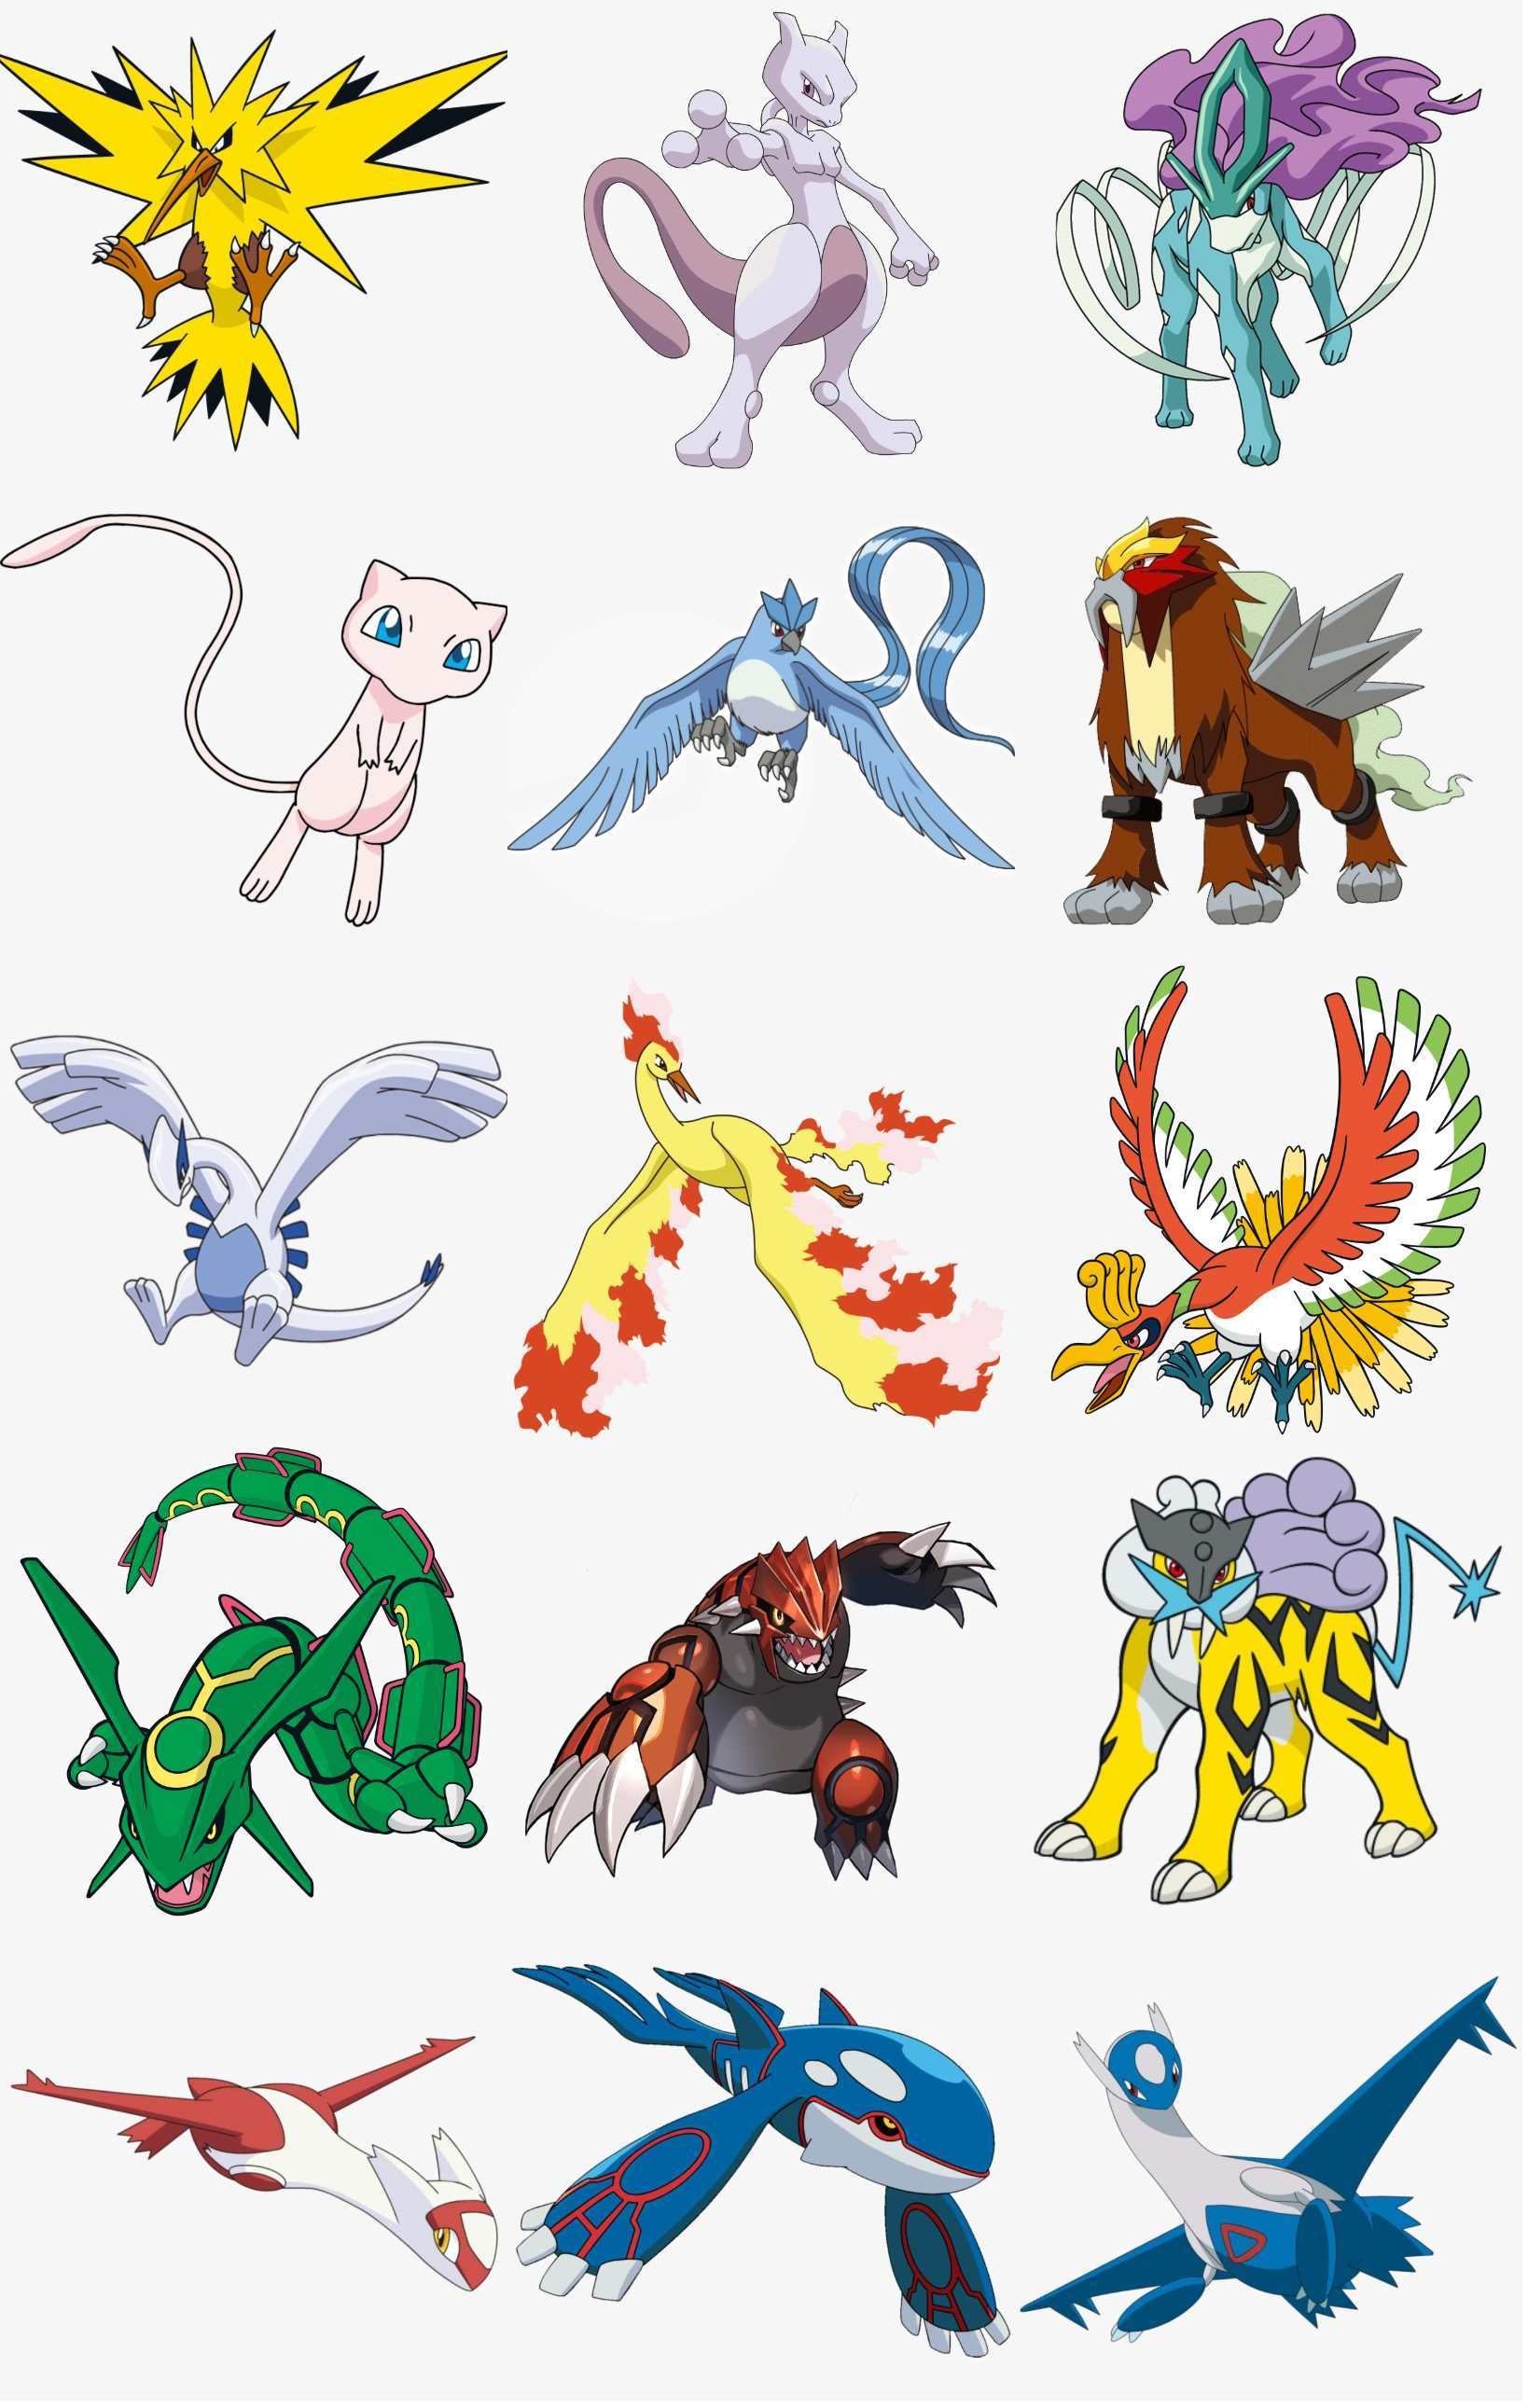 Solo un experto Pokémon podría reconocer al menos 10 de estos 15 Pokémon  legendarios